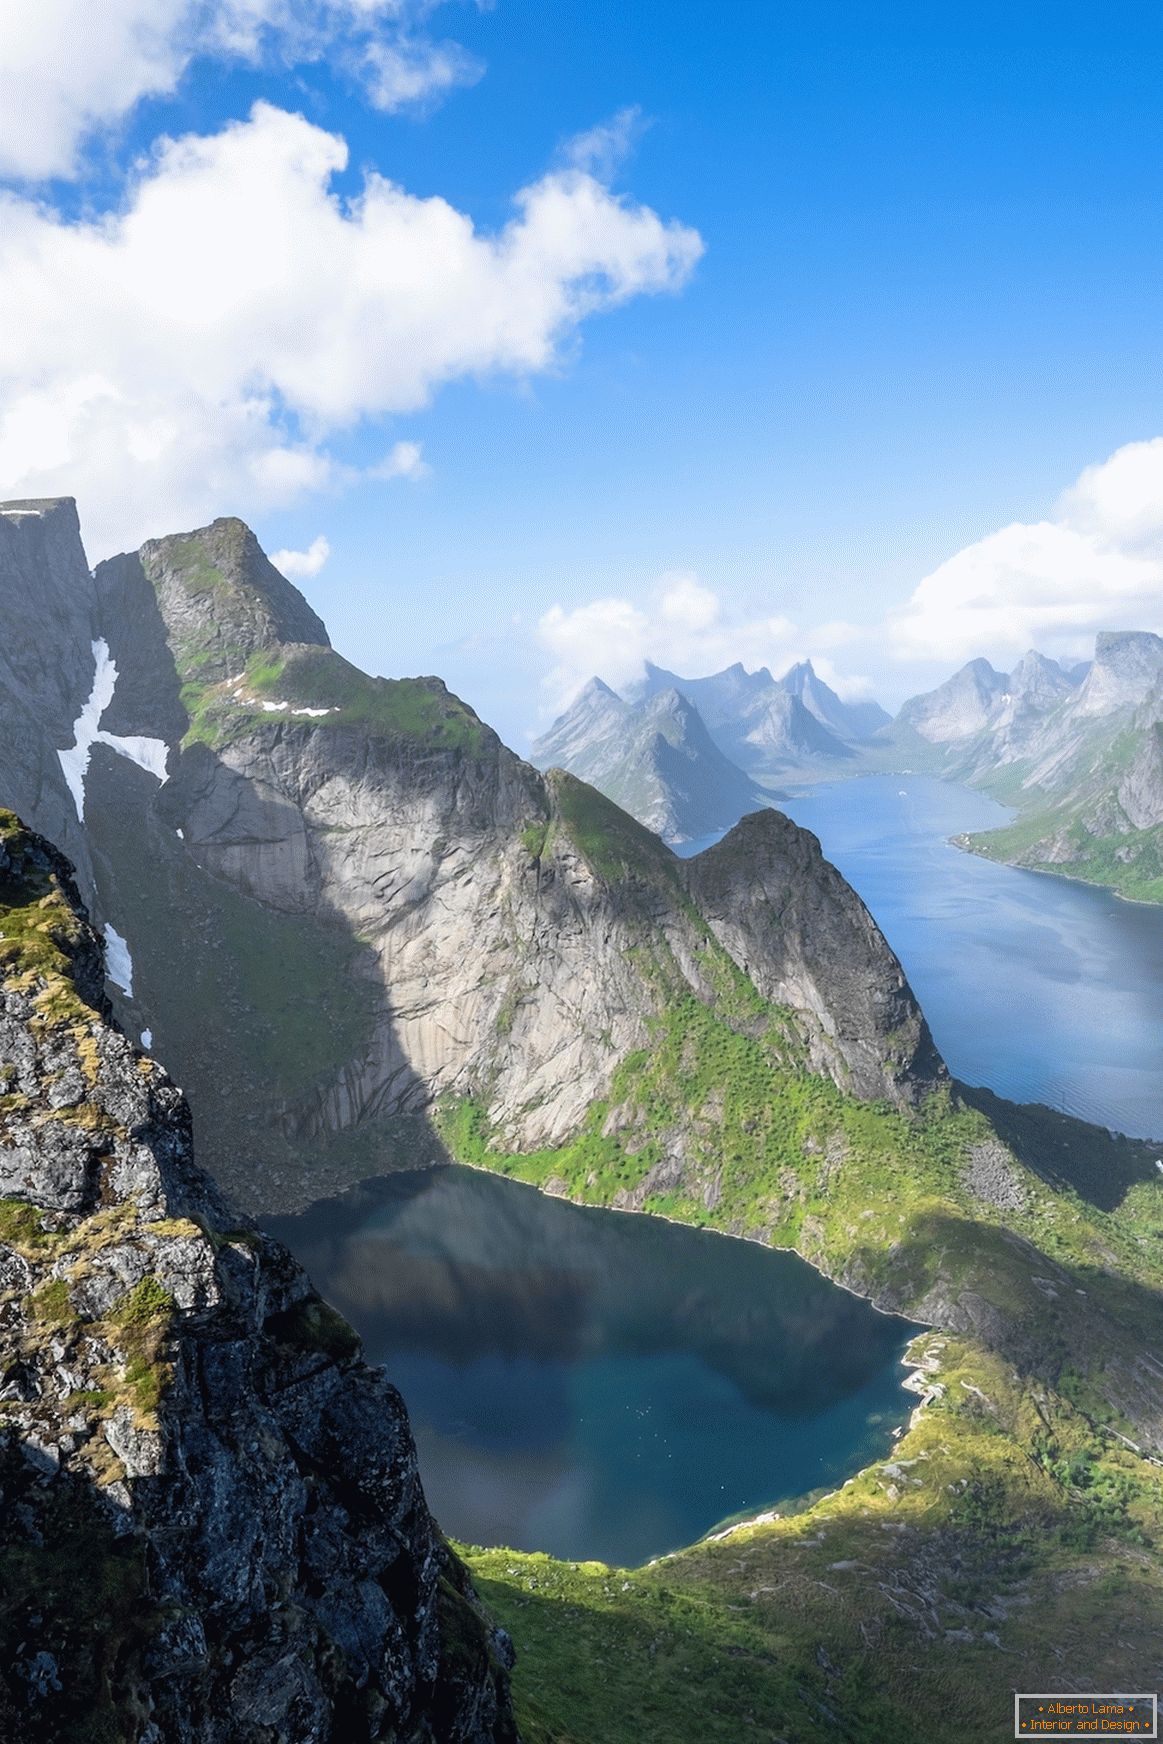 Noruega a partir de uma visão panorâmica